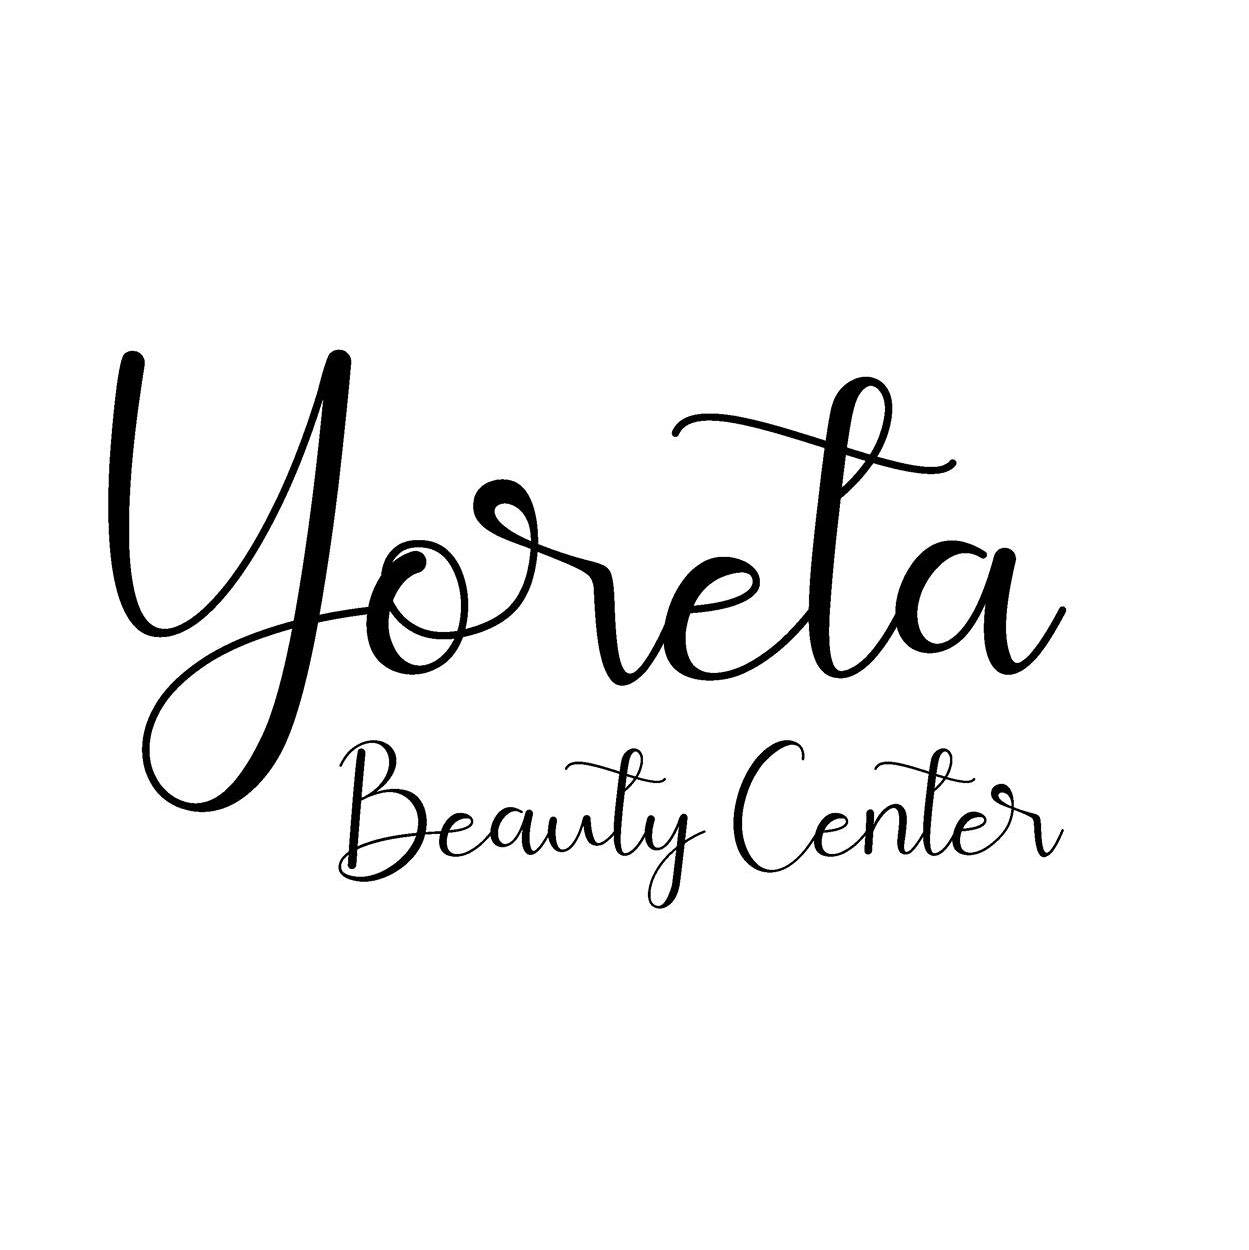 Yoreta beauty center & spa